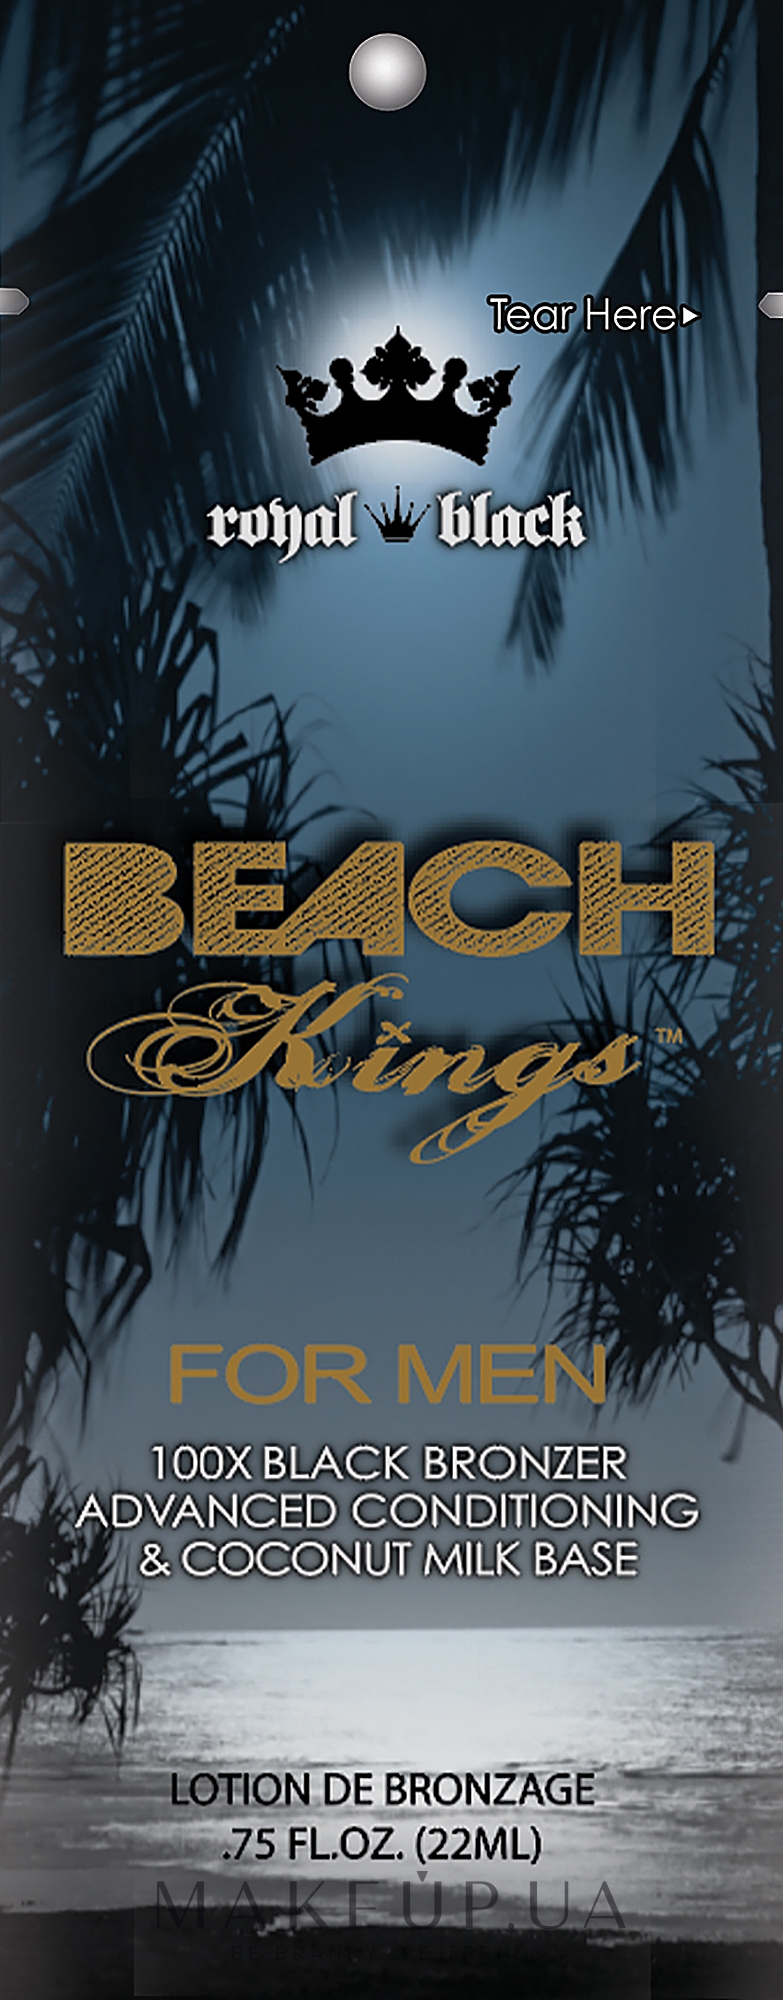 Крем для засмаги в солярії для чоловіків - Tan Asz U Beach Kings For Men (пробник) — фото 22ml